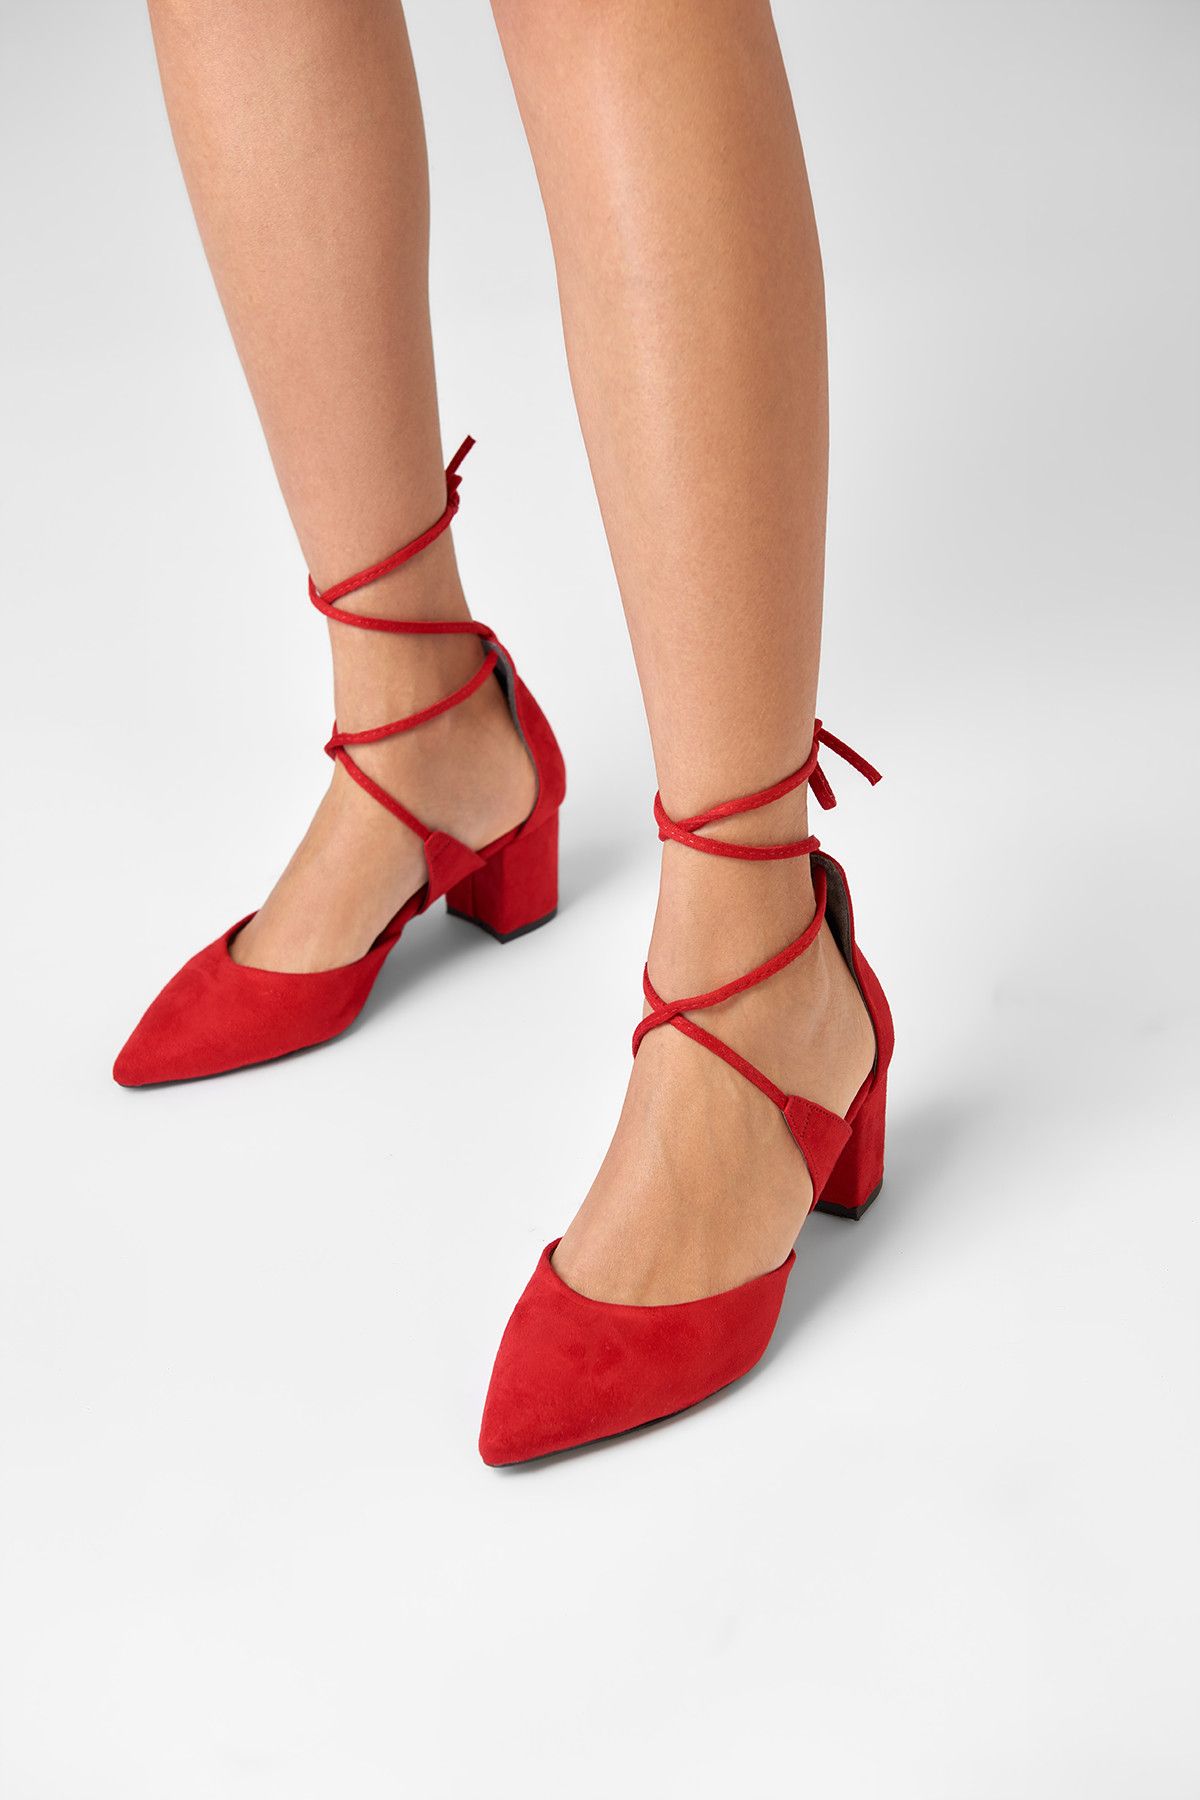 TRENDYOLMİLLA Kırmızı Süet Kadın Topuklu Ayakkabı 8228